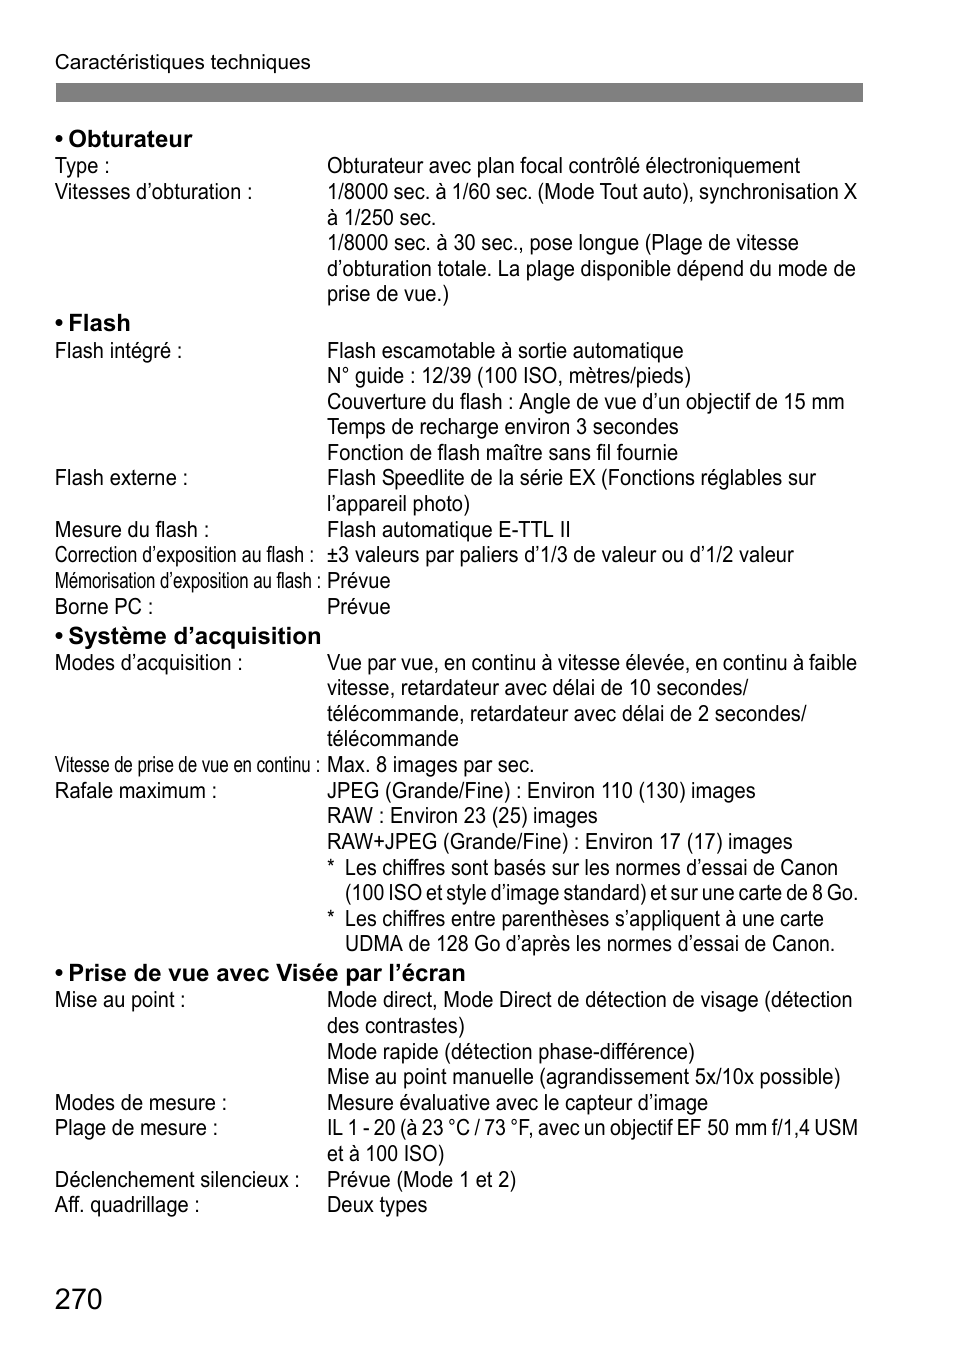 Canon EOS 7D Manuel d'utilisation | Page 270 / 296